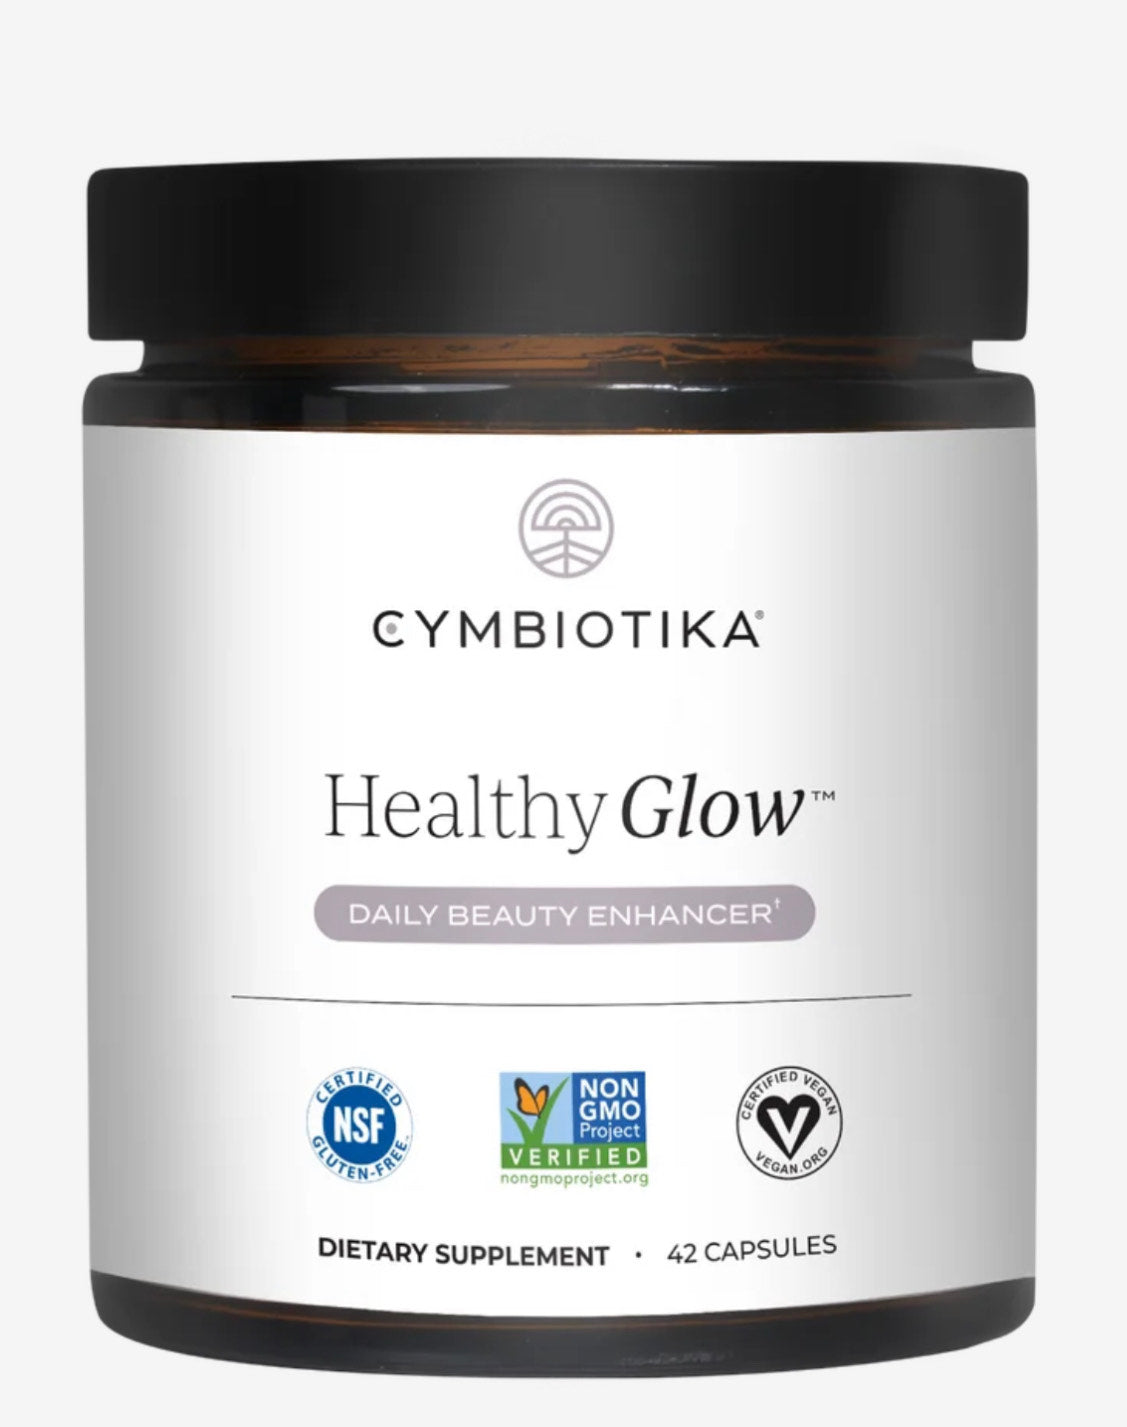 Cymbiotika Healthy Glow